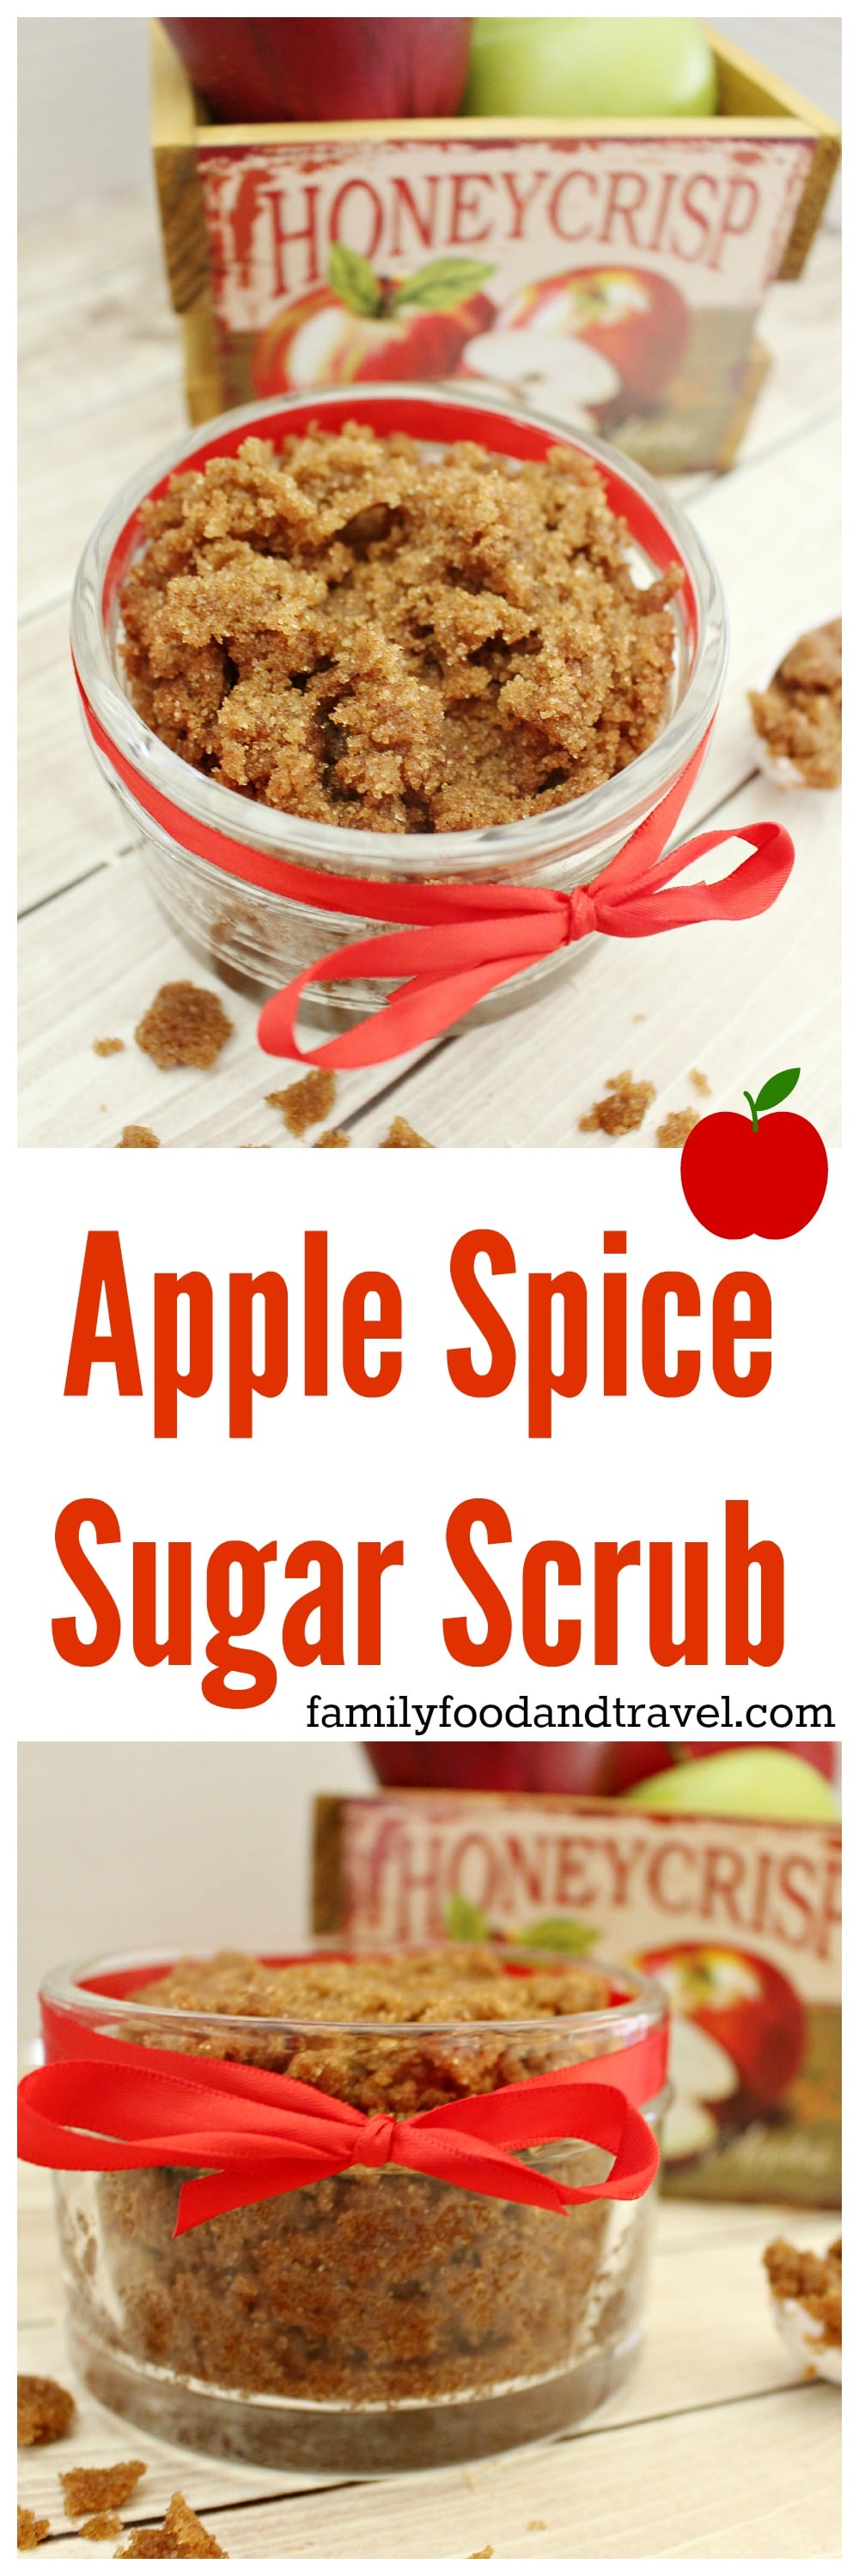 Apple Spice Sugar Scrub